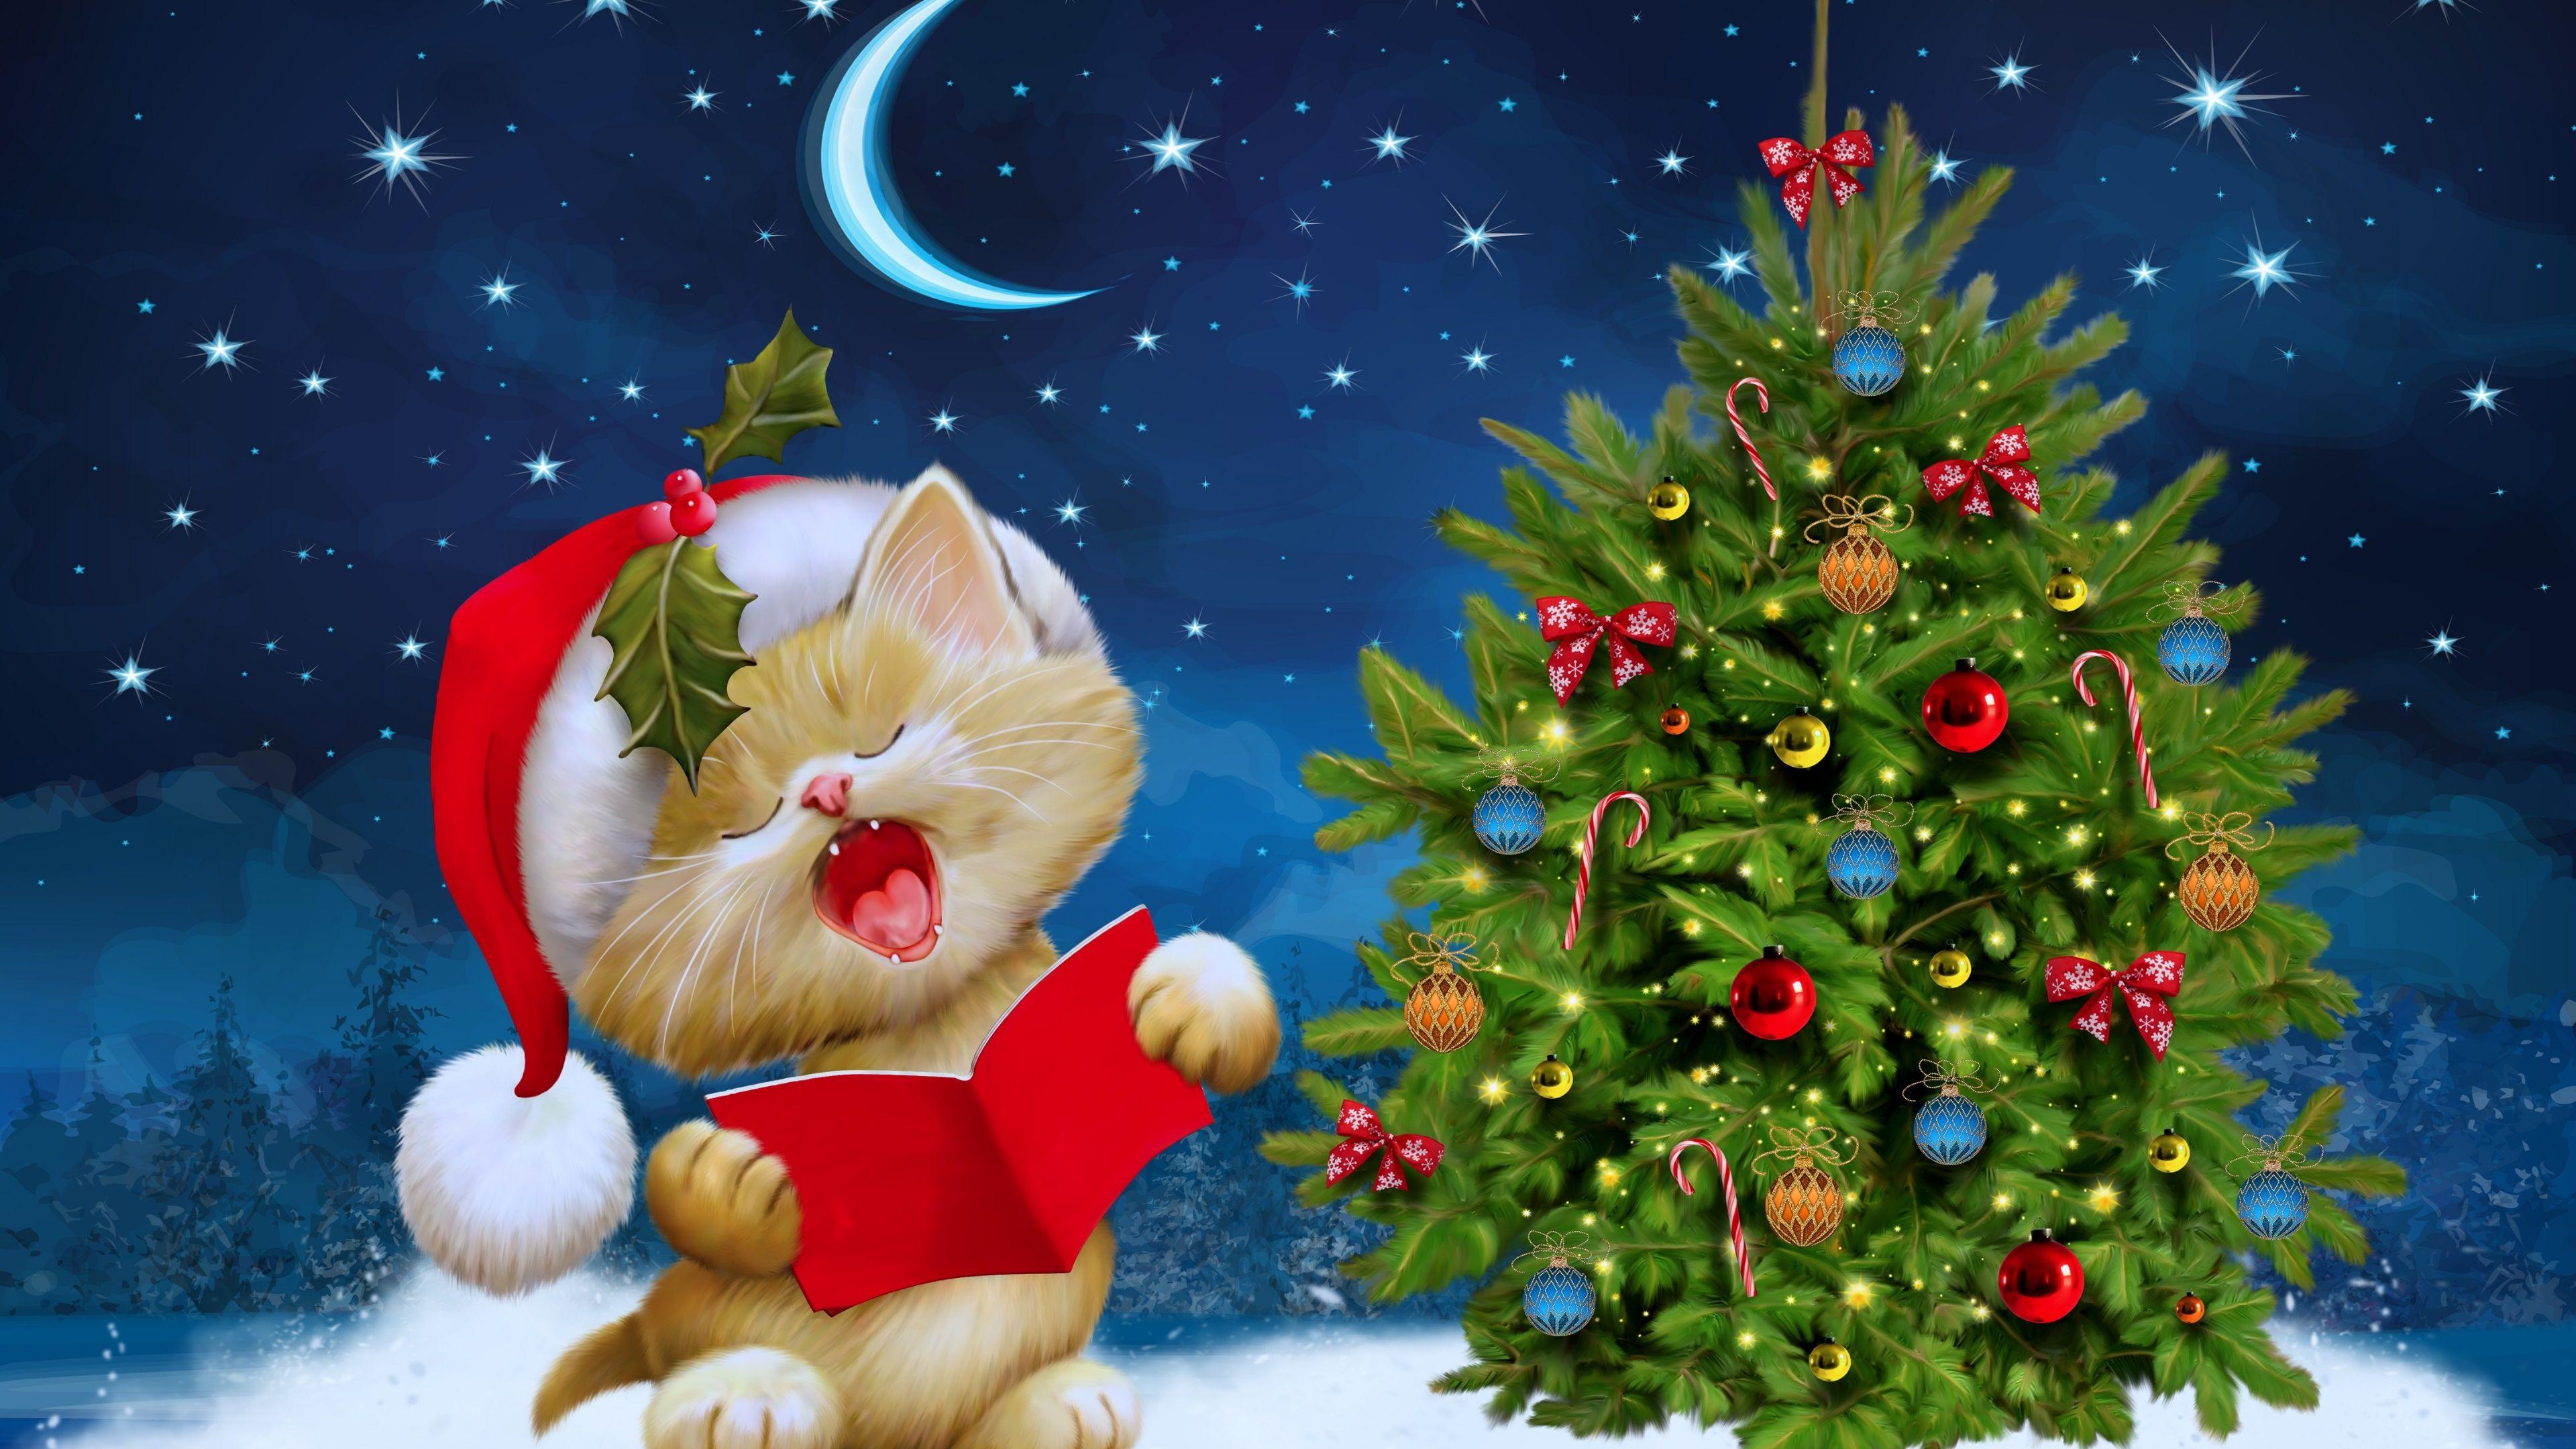 Merry Christmas Kitten Ultra HD Wallpaper. UHD Wallpaper.Net